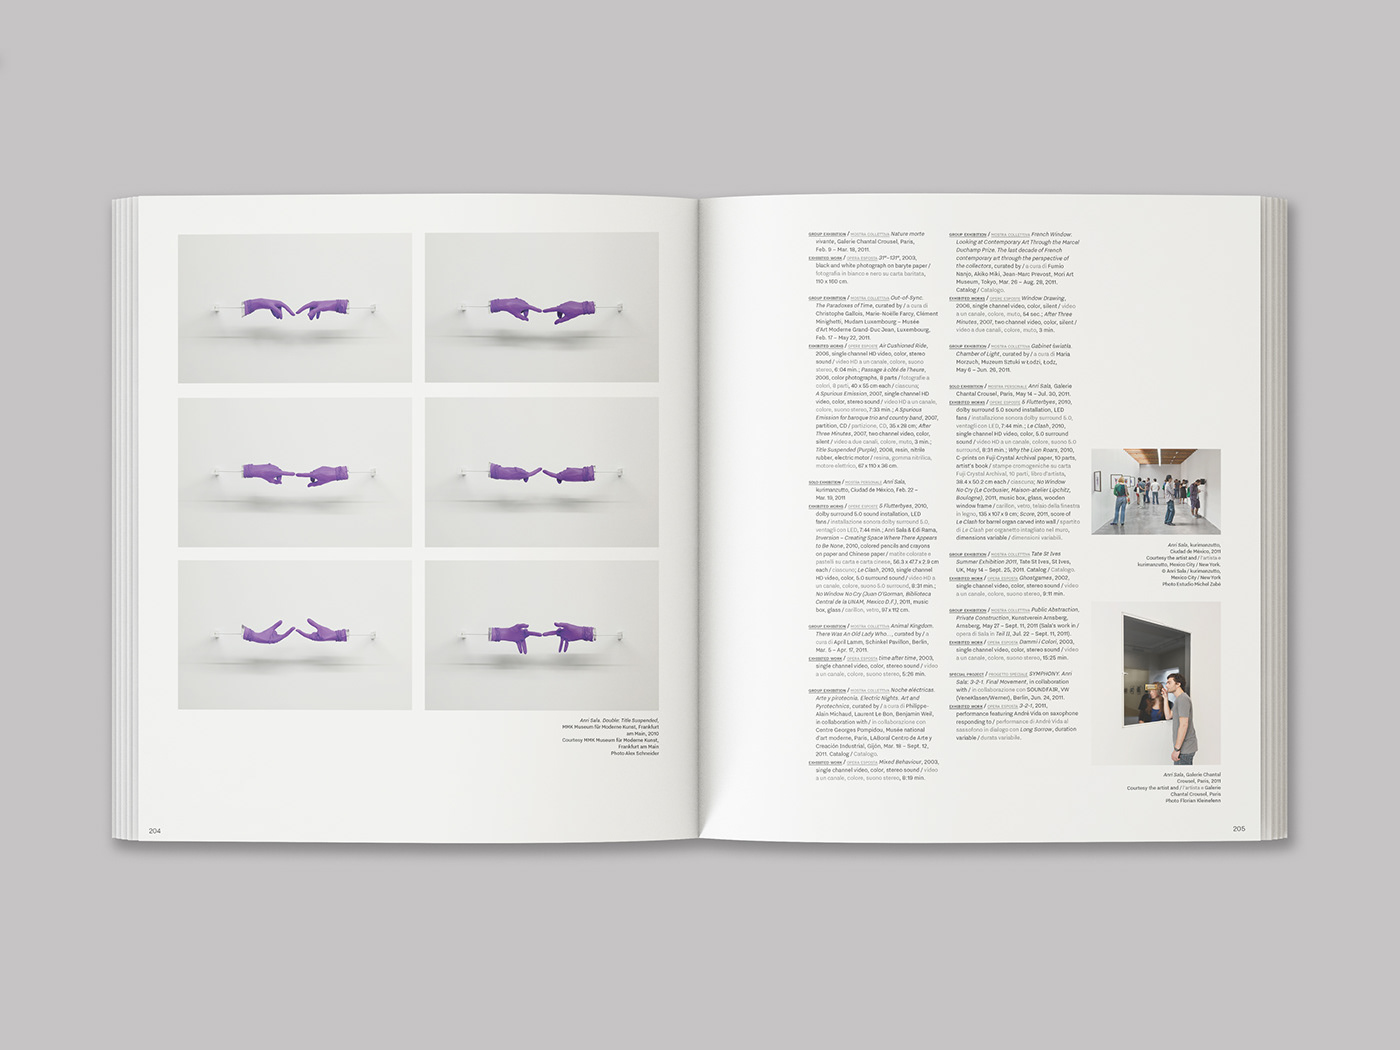 Anri Sala展览项目图册版式设计